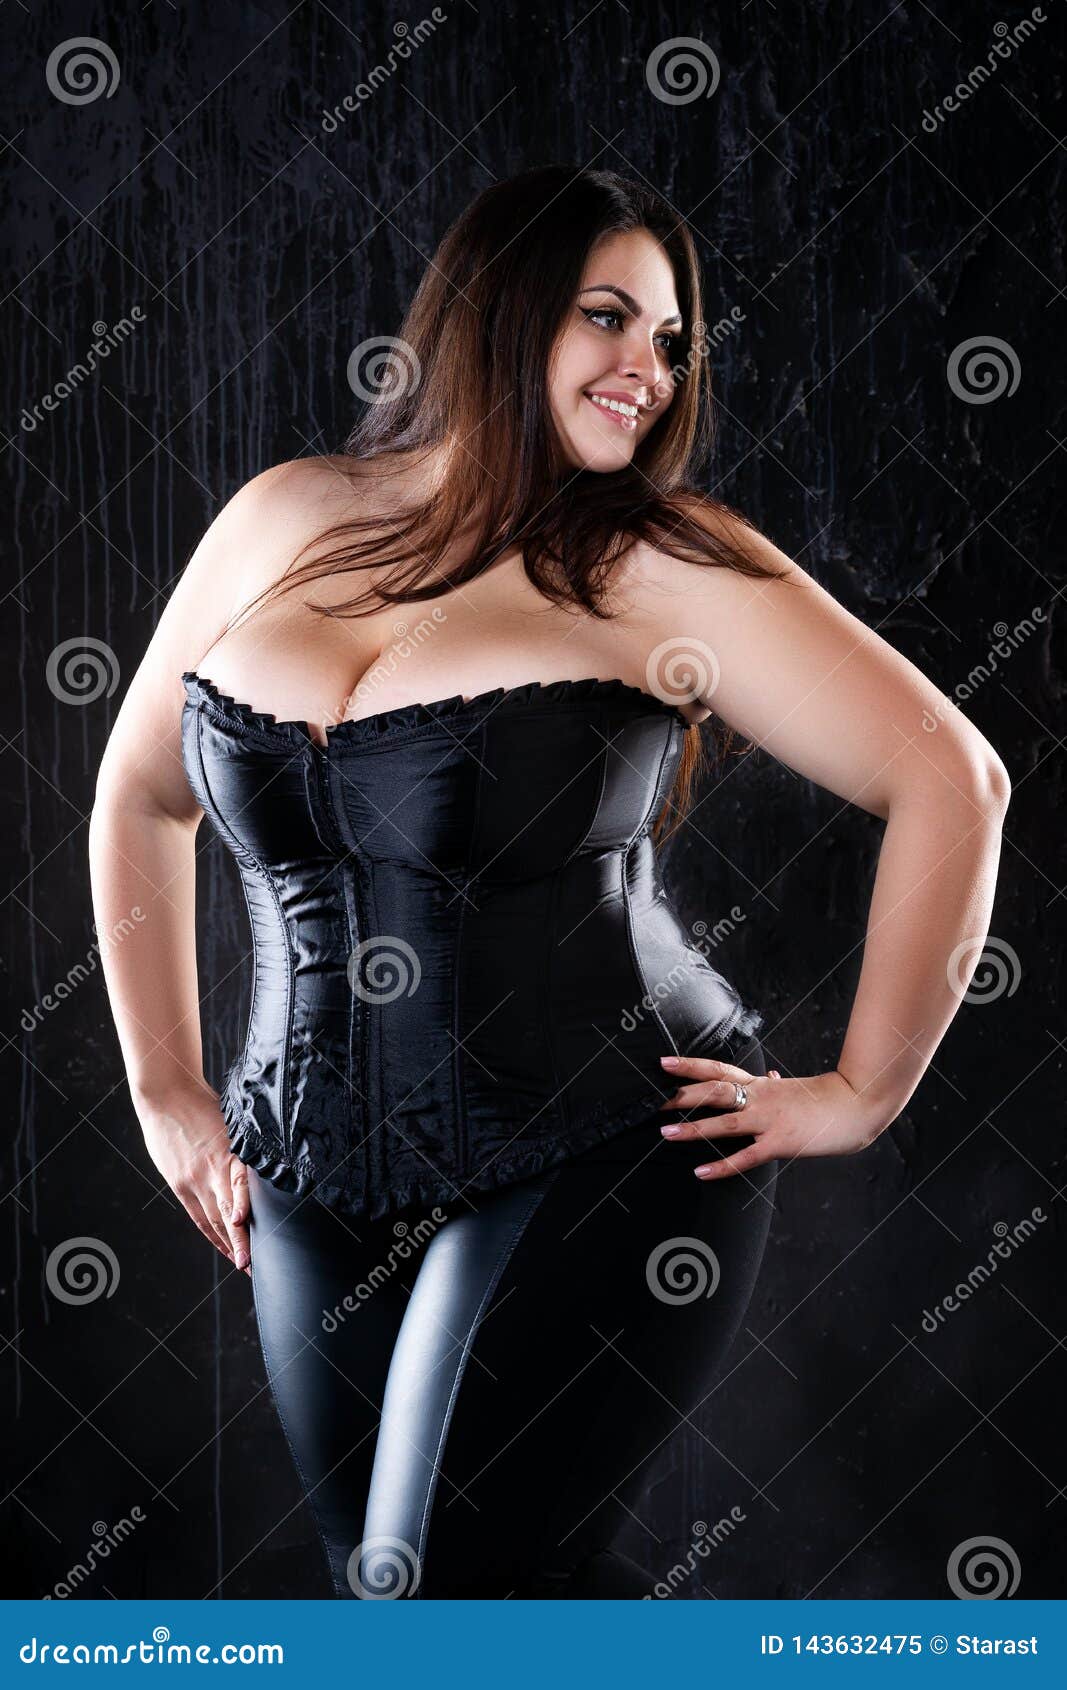 Sexigt plus formatmodell i den svarta korsetten, fet kvinna med stora naturliga bröst på mörk bakgrund, positivt begrepp för krop